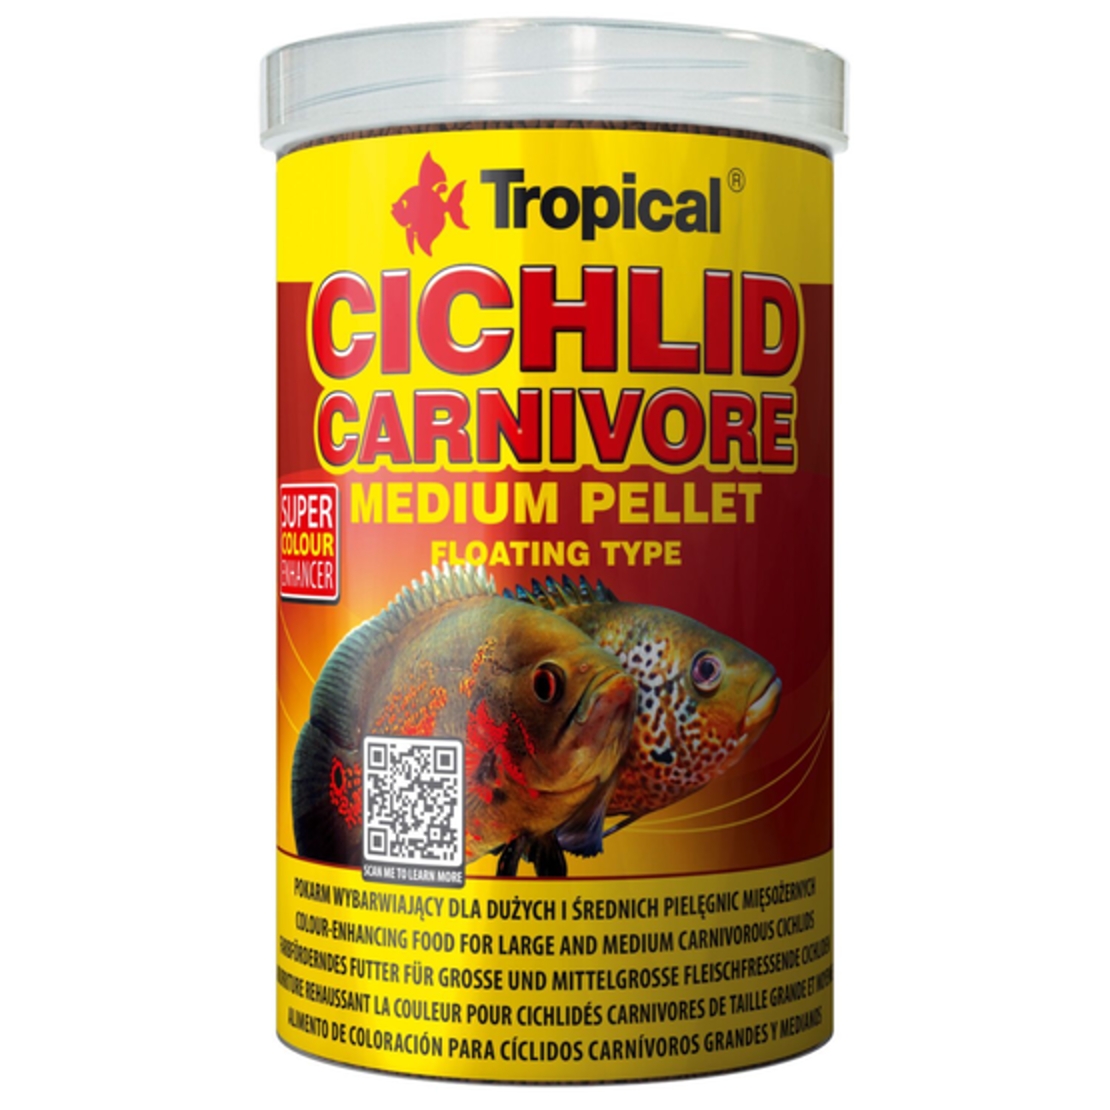 טרופיקל ציקליד אוכל בשר מדיום 1 ליטר | Tropical CICHLID CARNIVORE MEDIUM pellet-1L